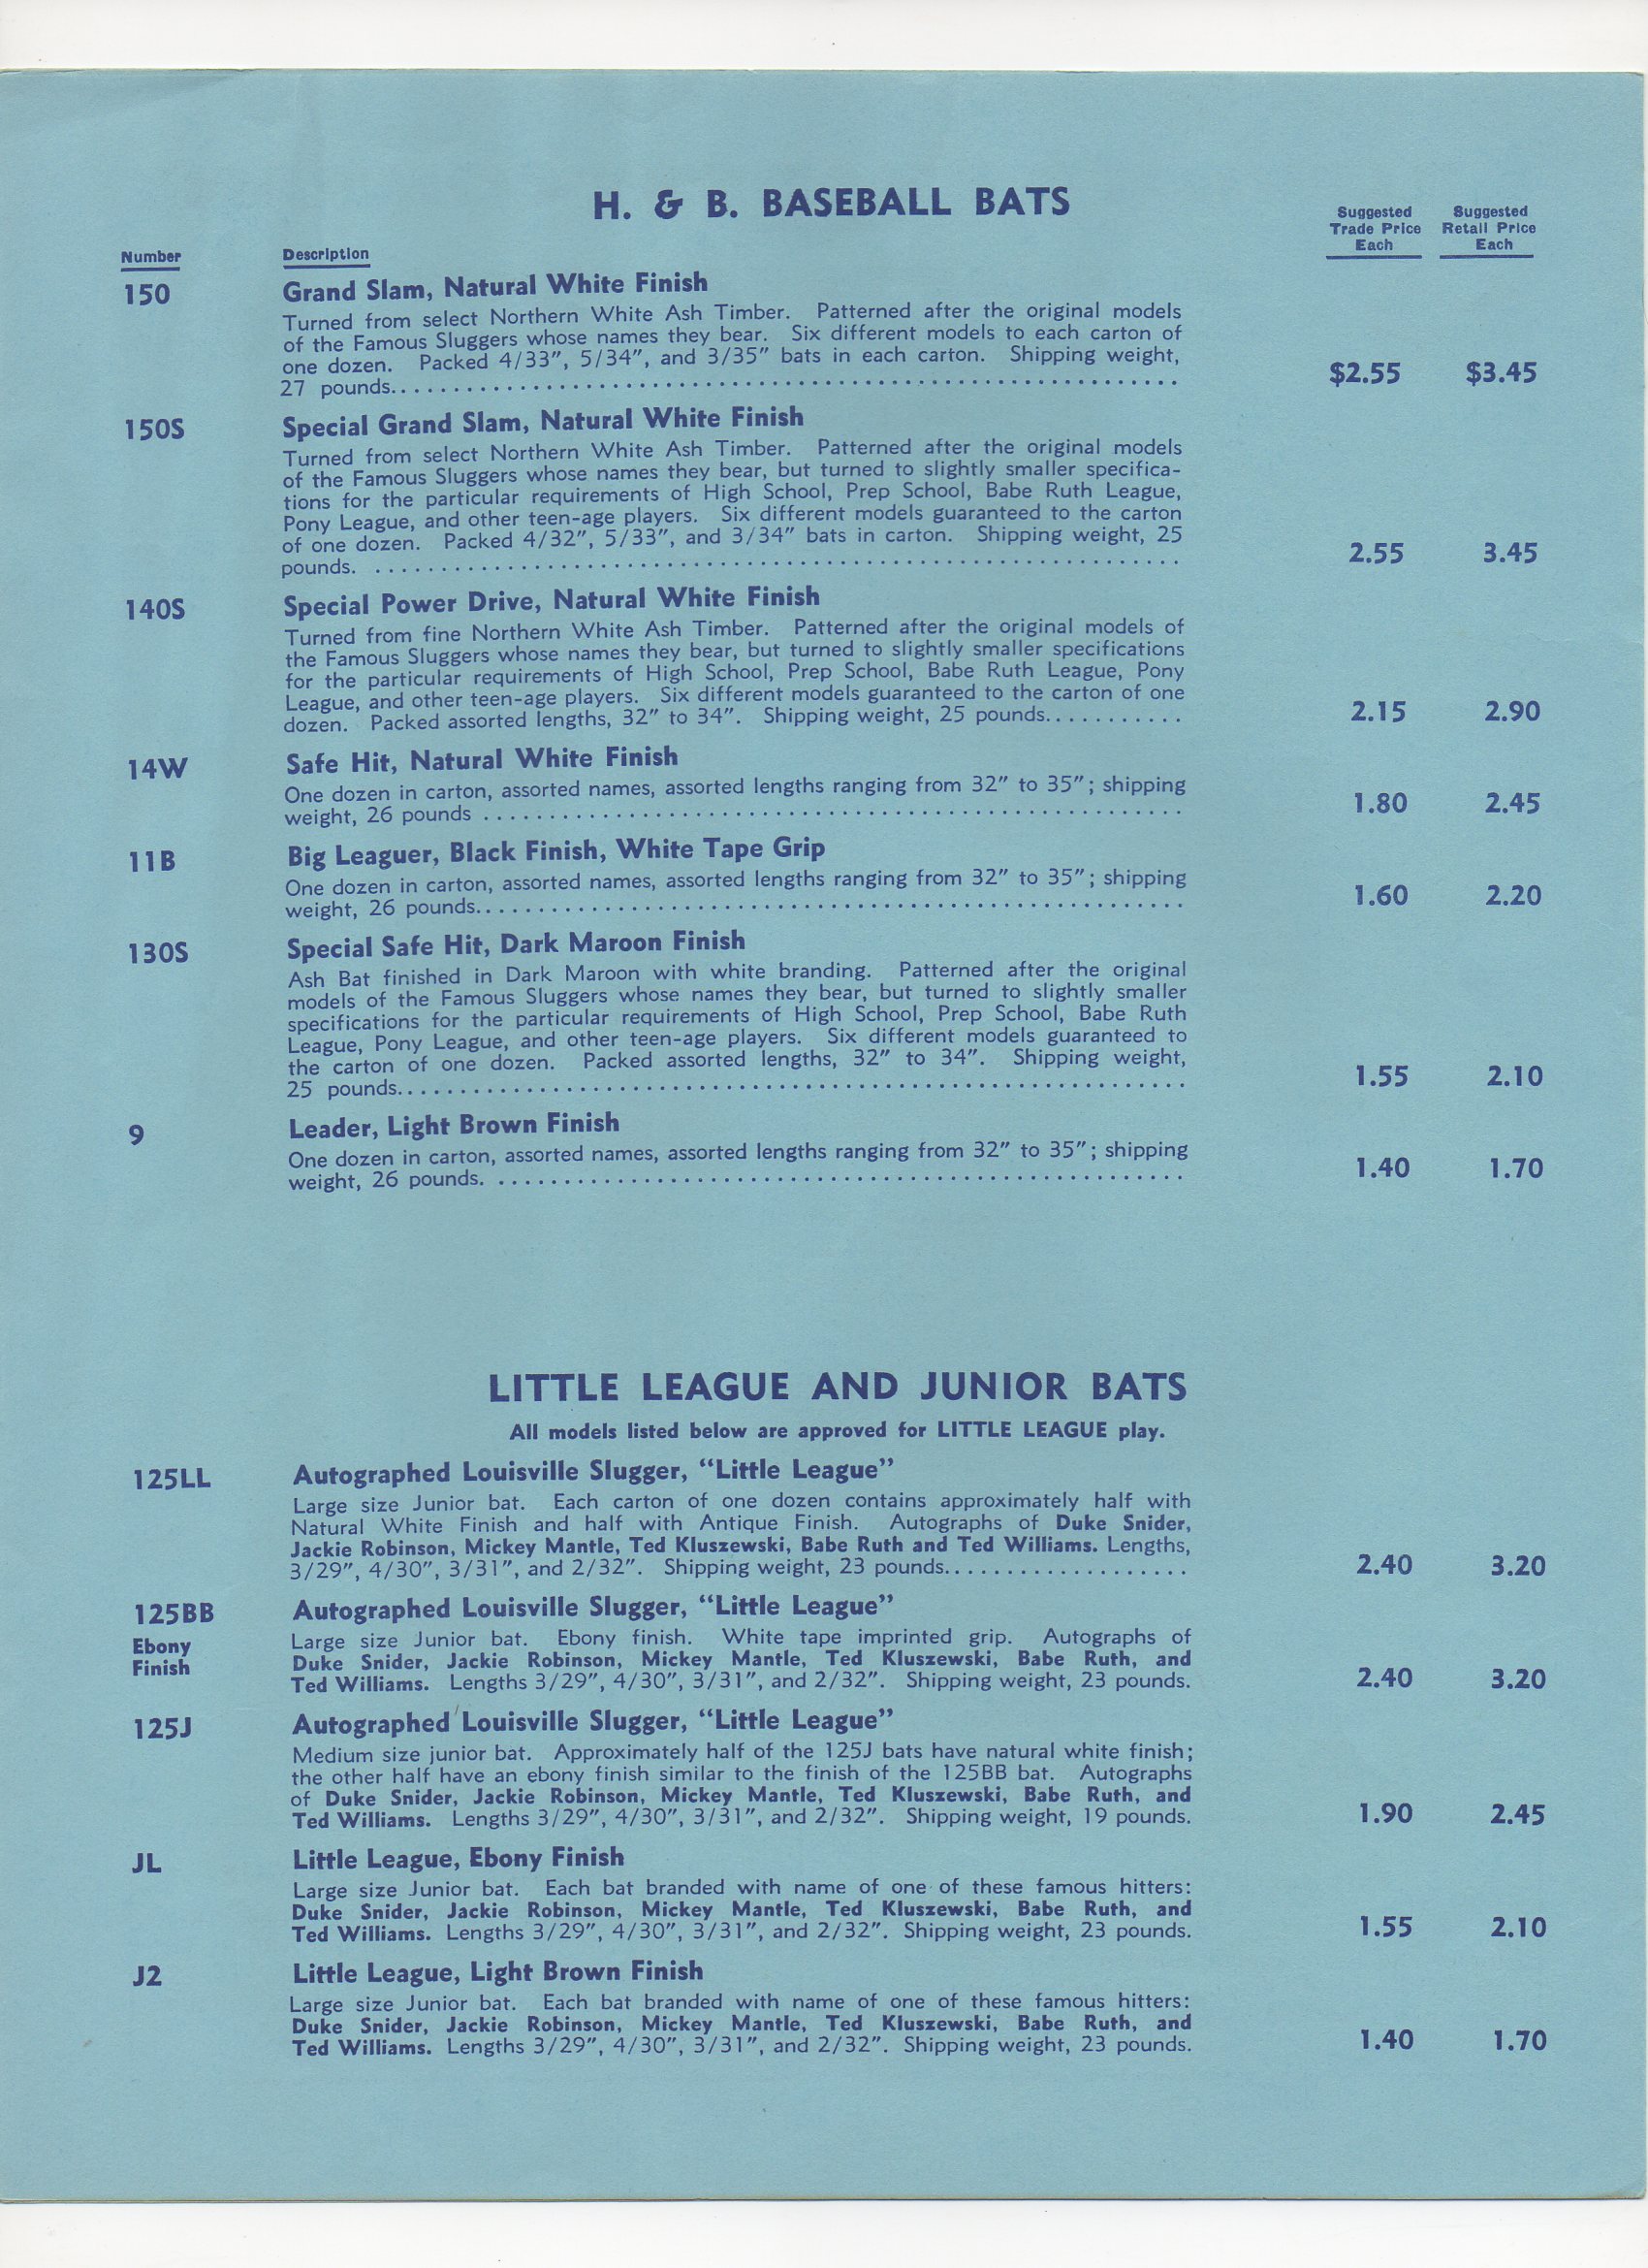 1956 bat price schedule